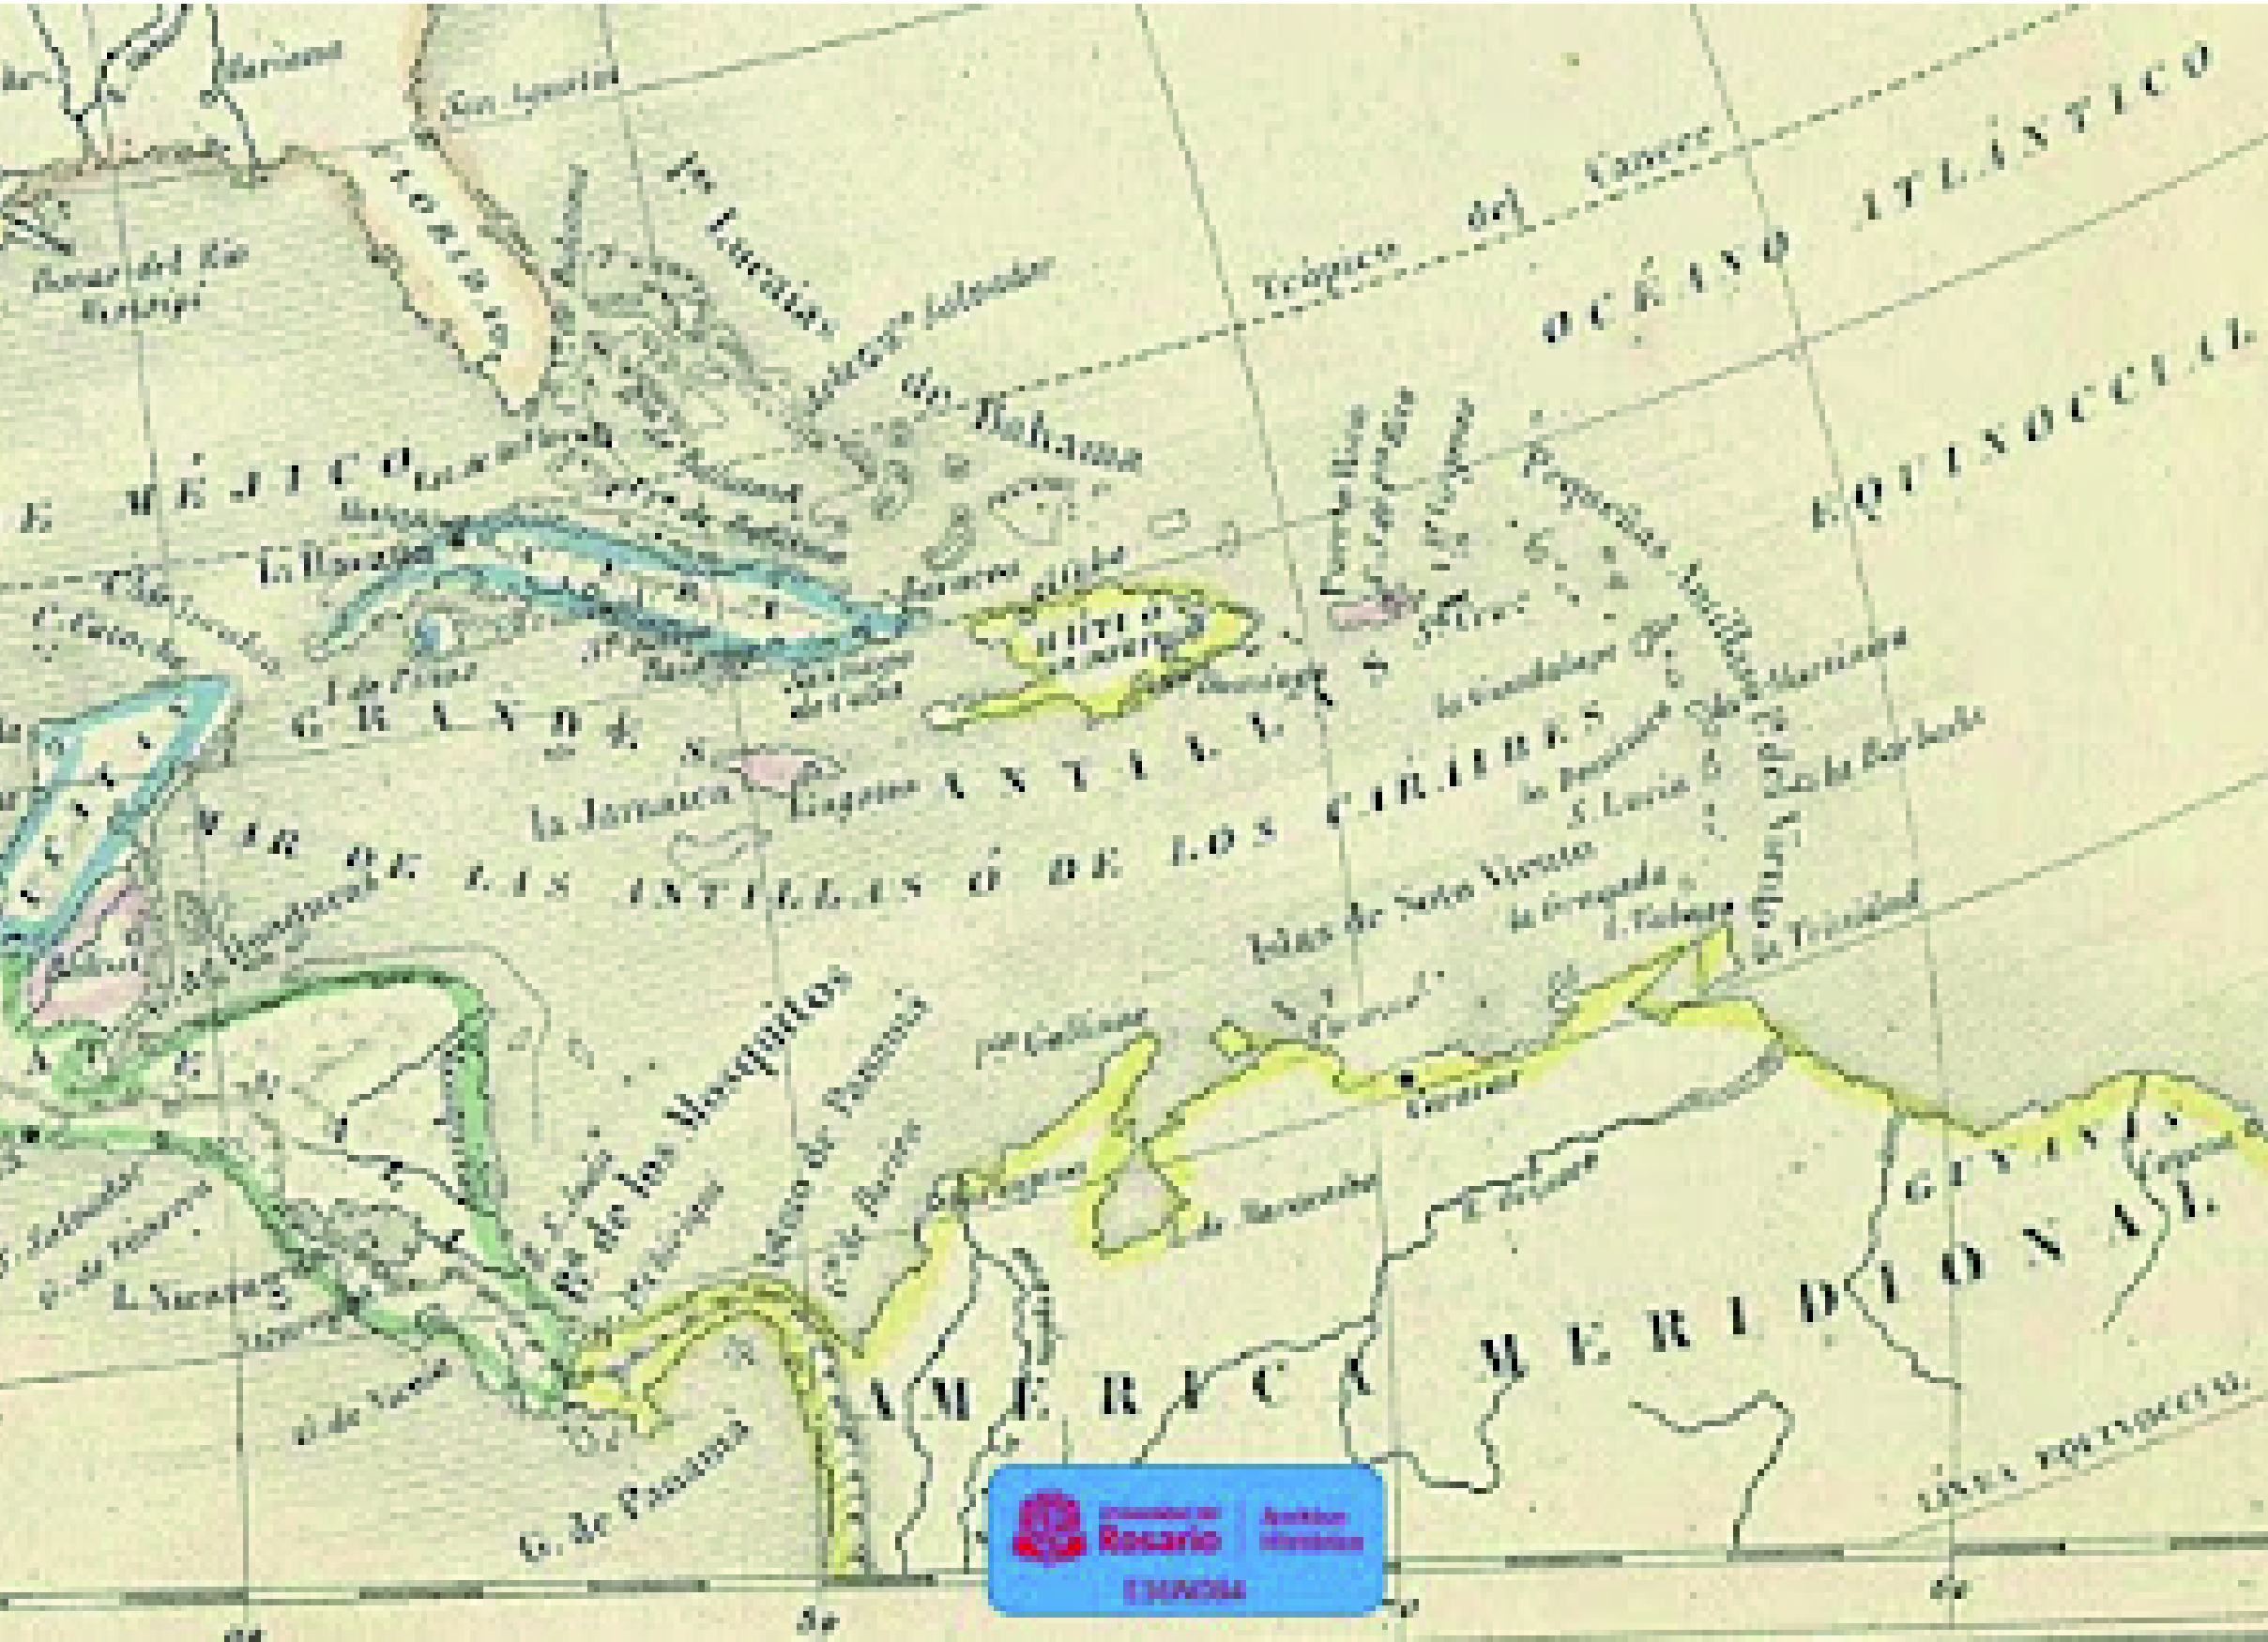 La Jamaica, entre las Grandes Antillas. Tardieu, A. (1847). Atlas de geografía universal para uso de las escuelas del reino. París: Lasserre. 